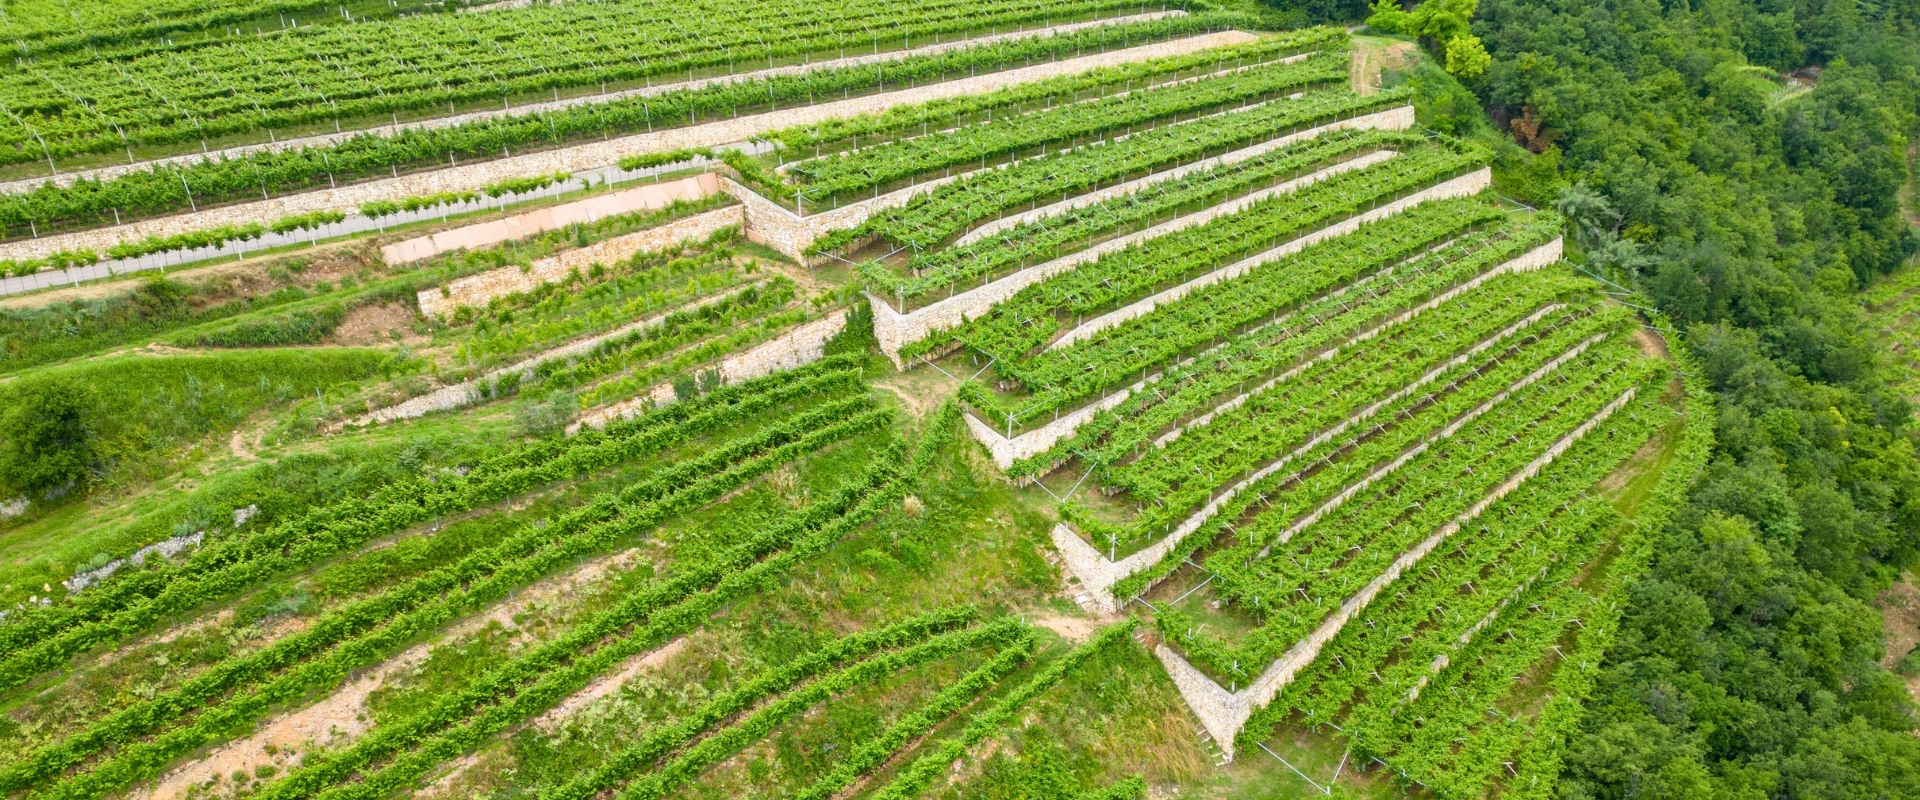 Terraced vineyard in Italy